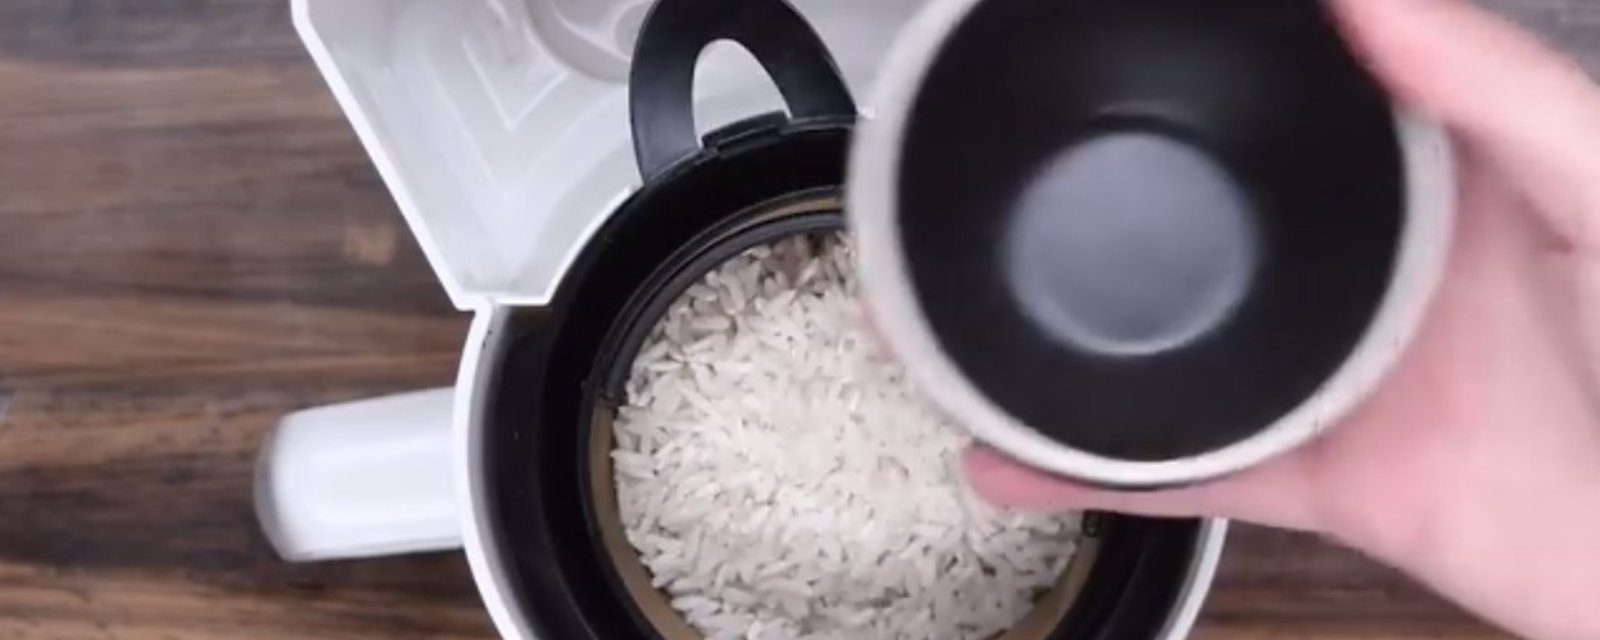 Elle met du riz dans sa cafetière et remplit le réservoir d'eau